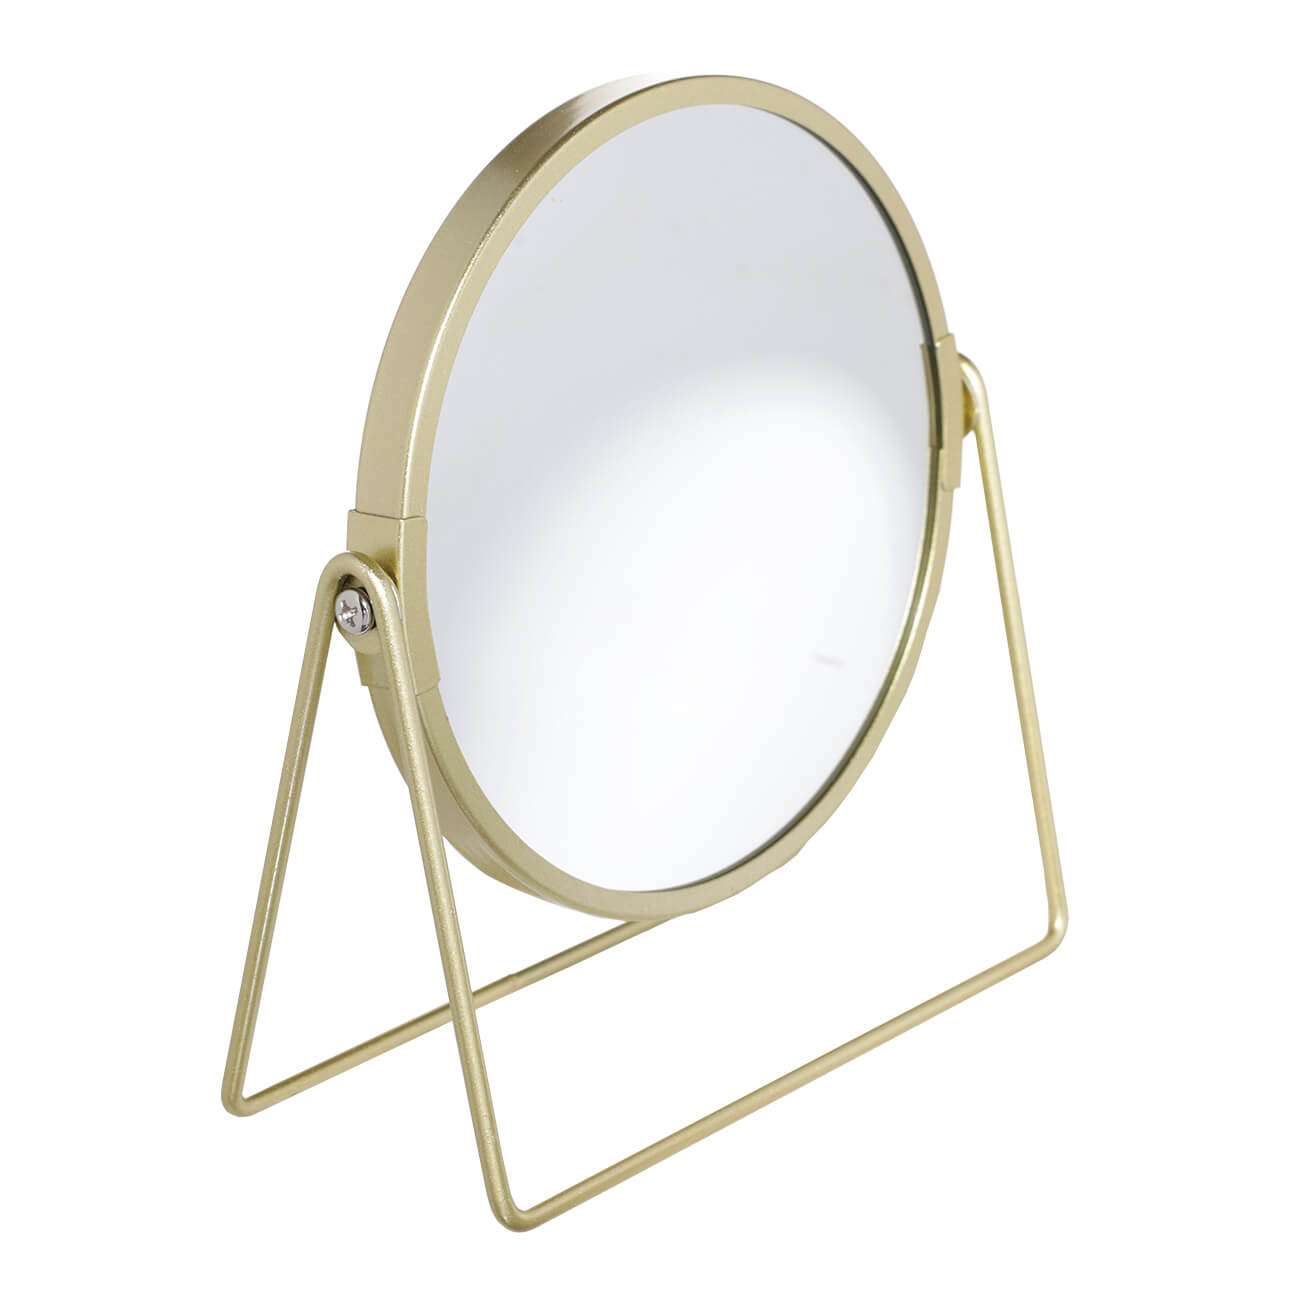 Зеркало настольное, 18 см, двустороннее, металл, круглое, золотистое, Freya двустороннее косметическое зеркало unistor